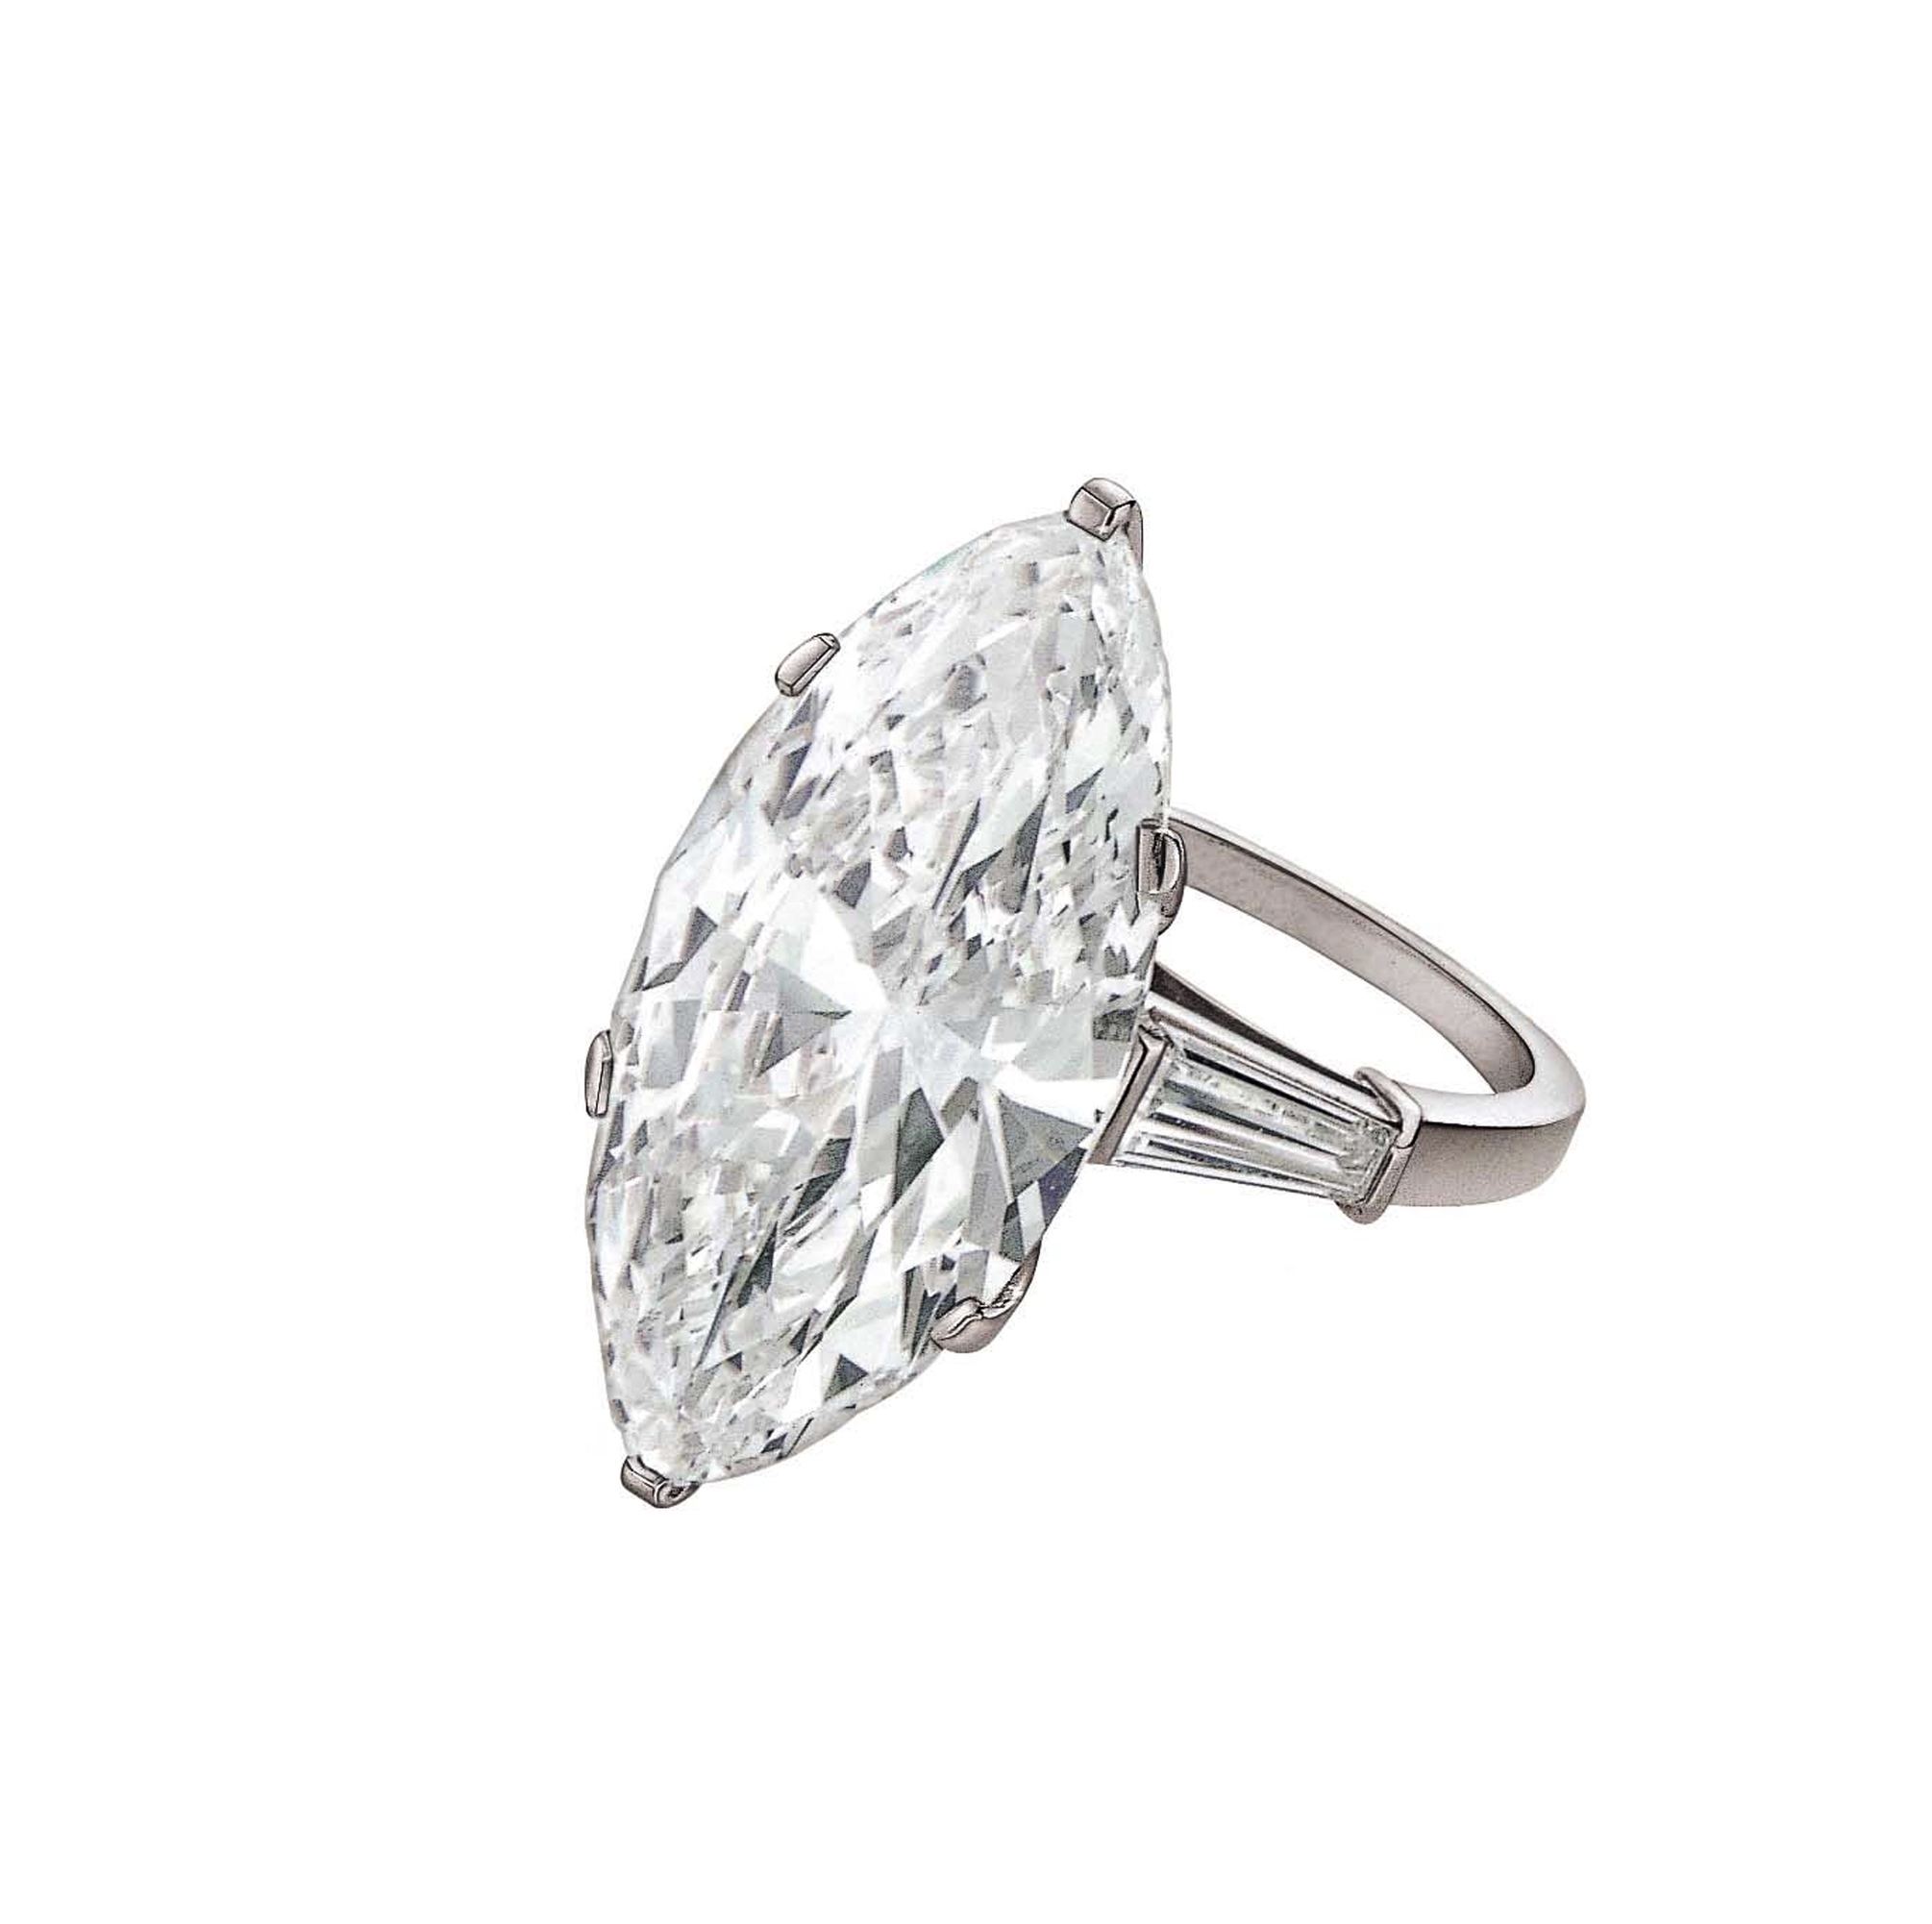 Marquise platinum diamond engagement ring